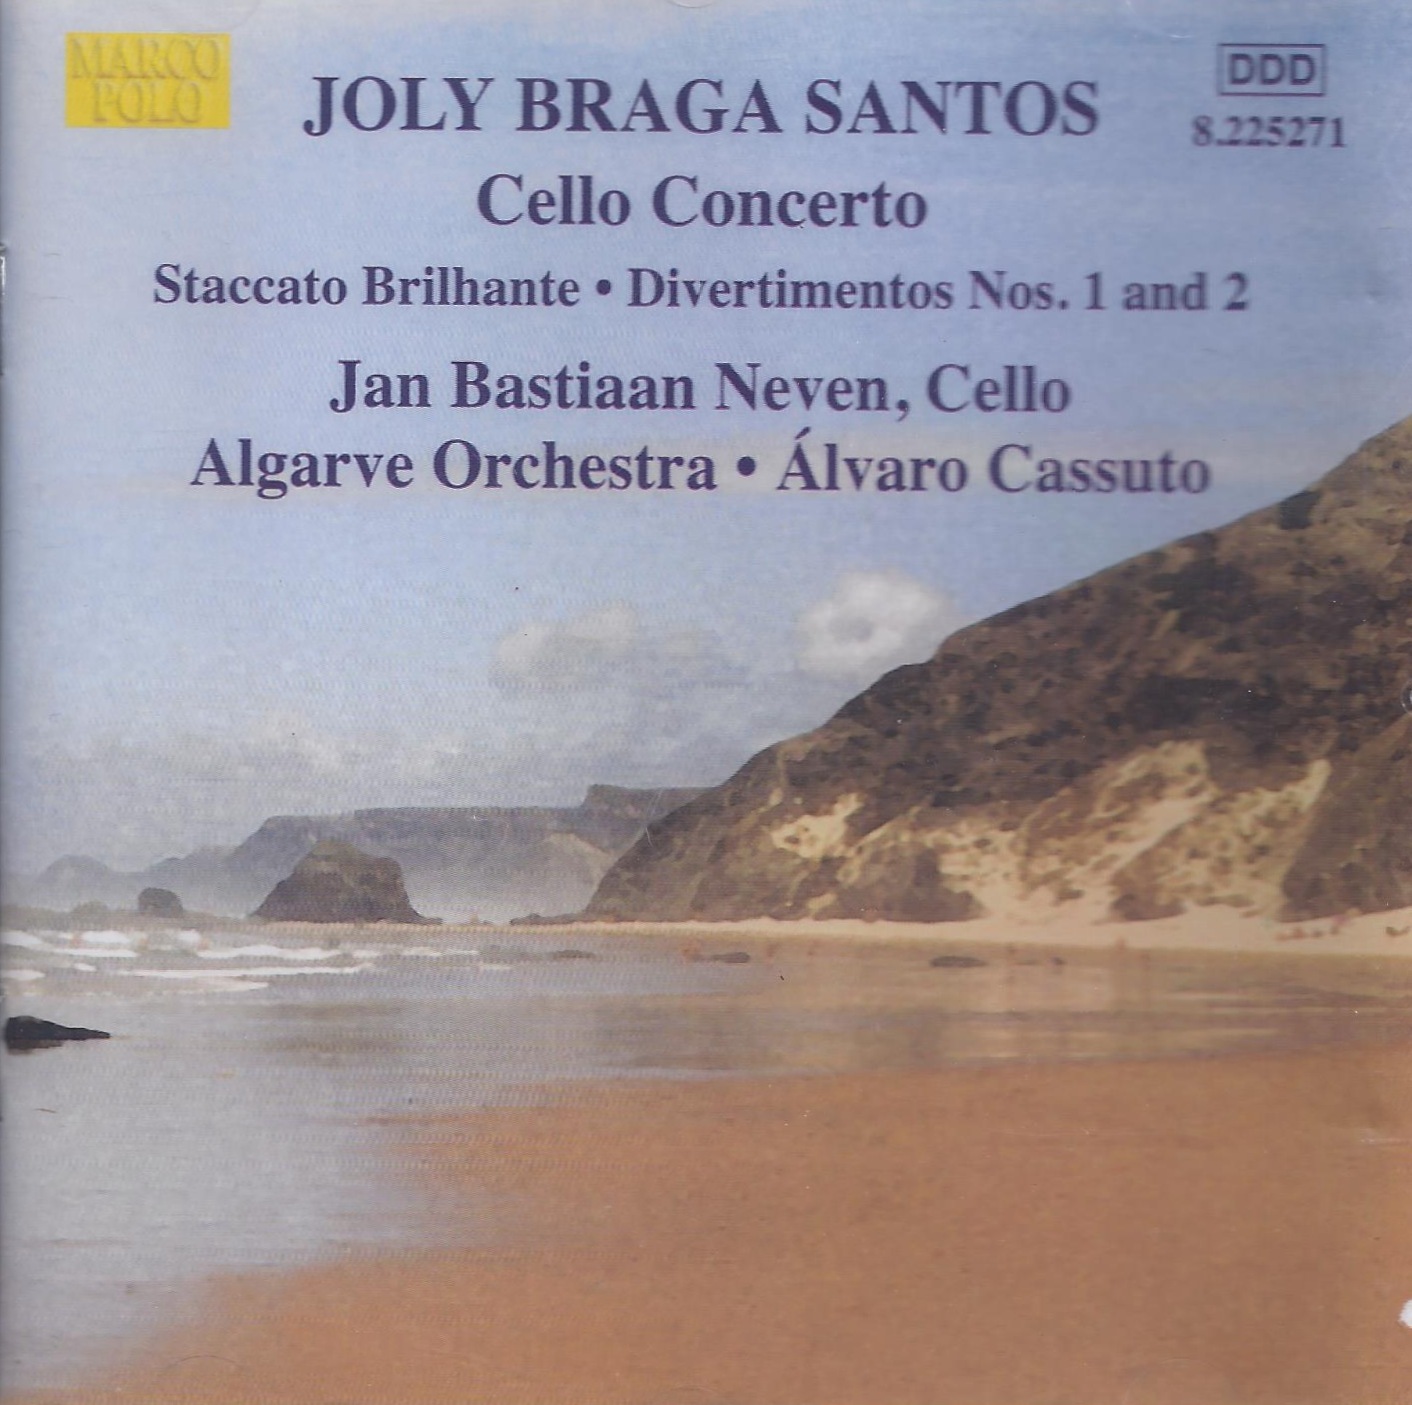 BRAGA SANTOS: Cello concerto, Divertimentos Nos. 1 and 2